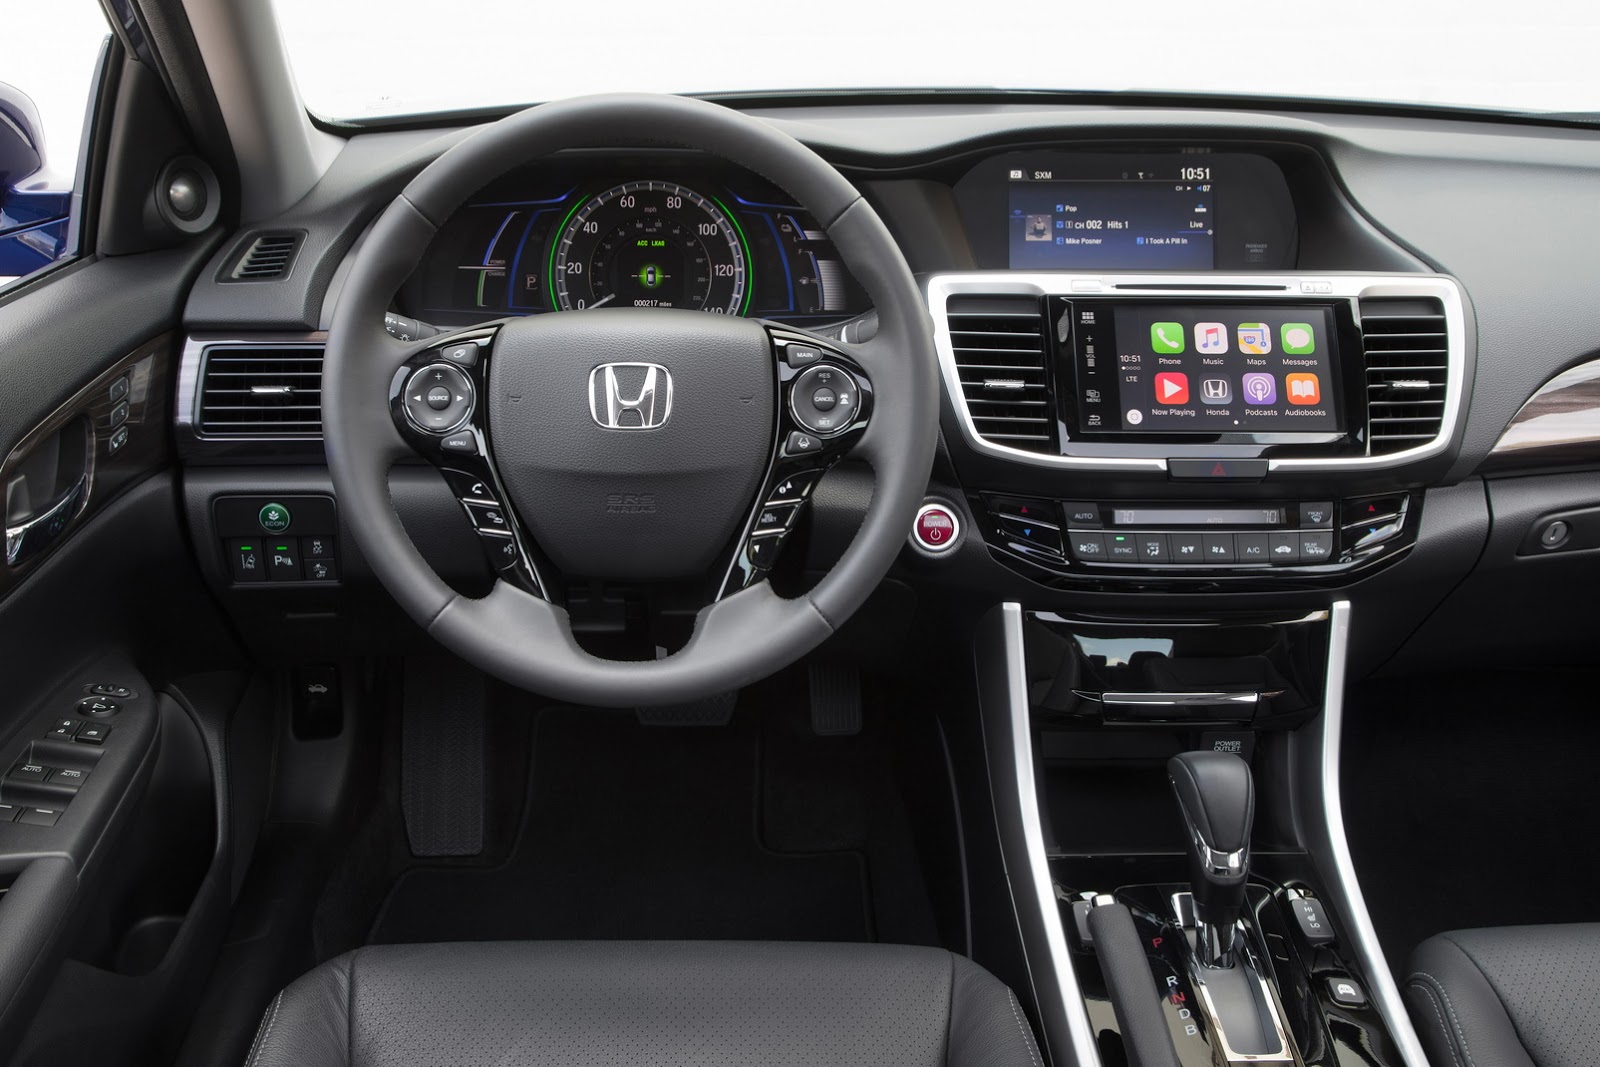 
Ví dụ hệ thống an toàn Honda Sensing tiêu chuẩn và giao diện màn hình cảm ứng Display Audio mới nhất, tương thích ứng dụng Apple CarPlay cũng như Android Auto.
